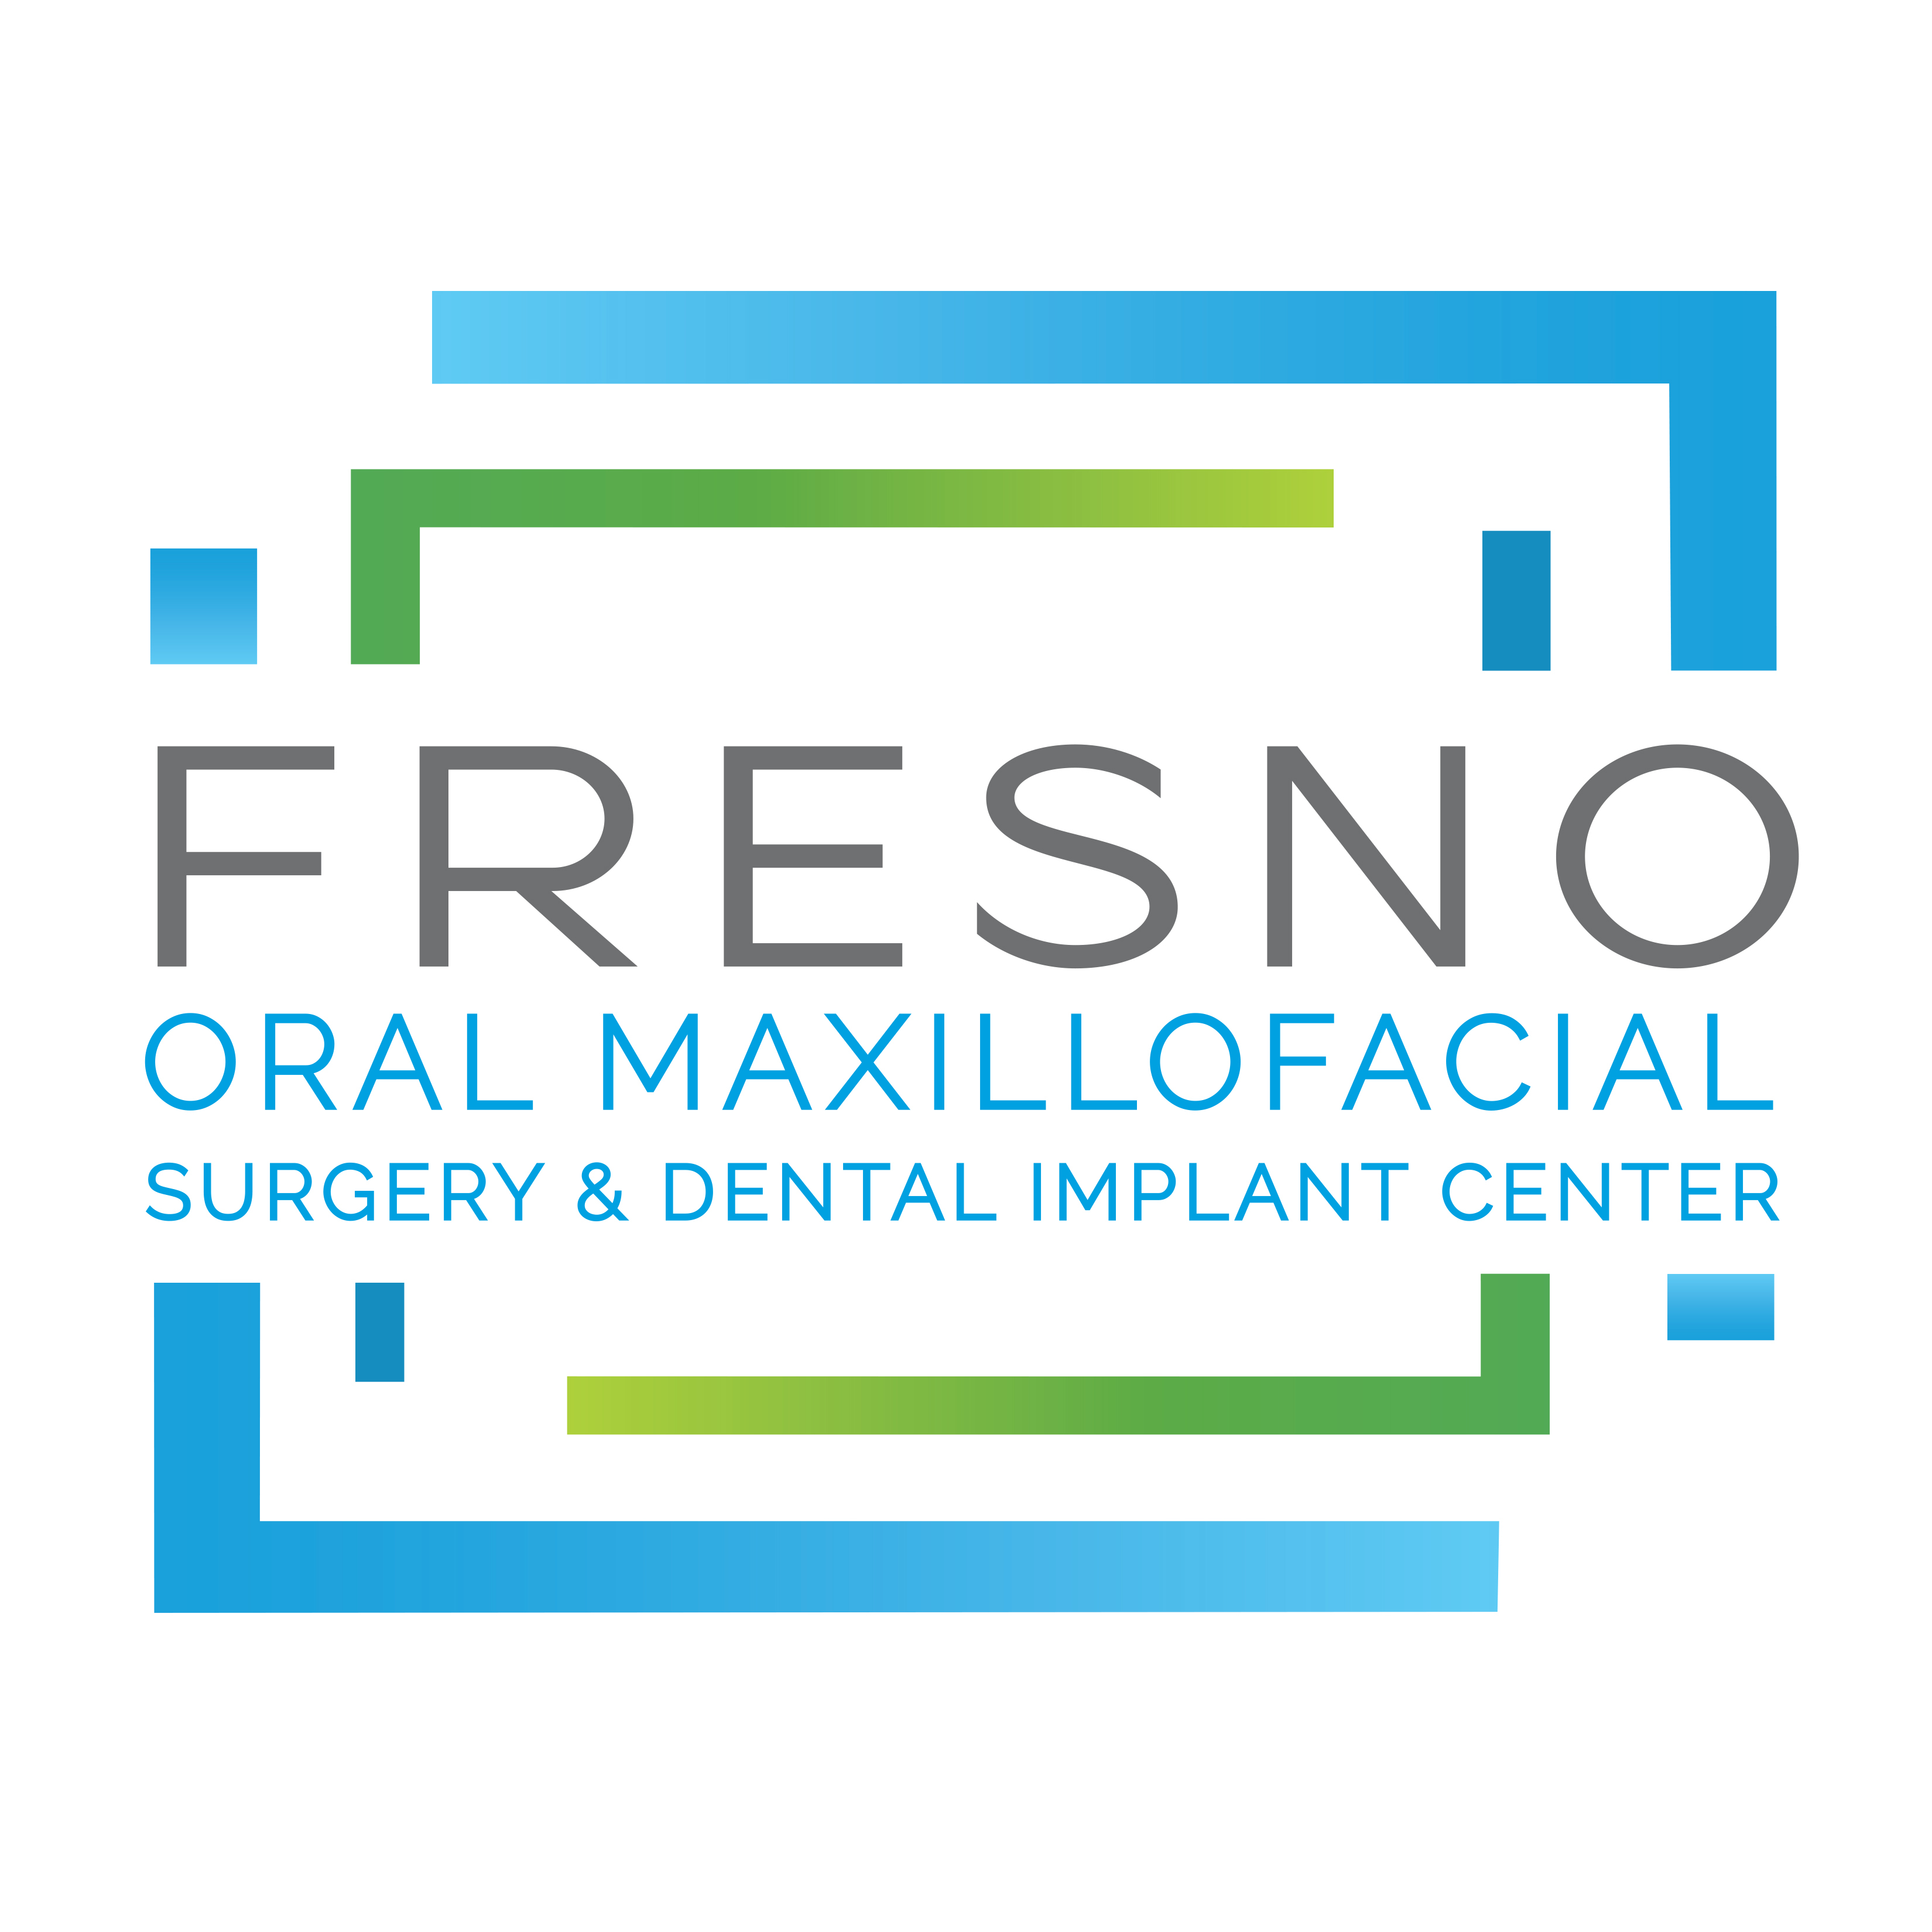 Fresno Oral Maxillofacial Surgery & Dental Implant Center Photo